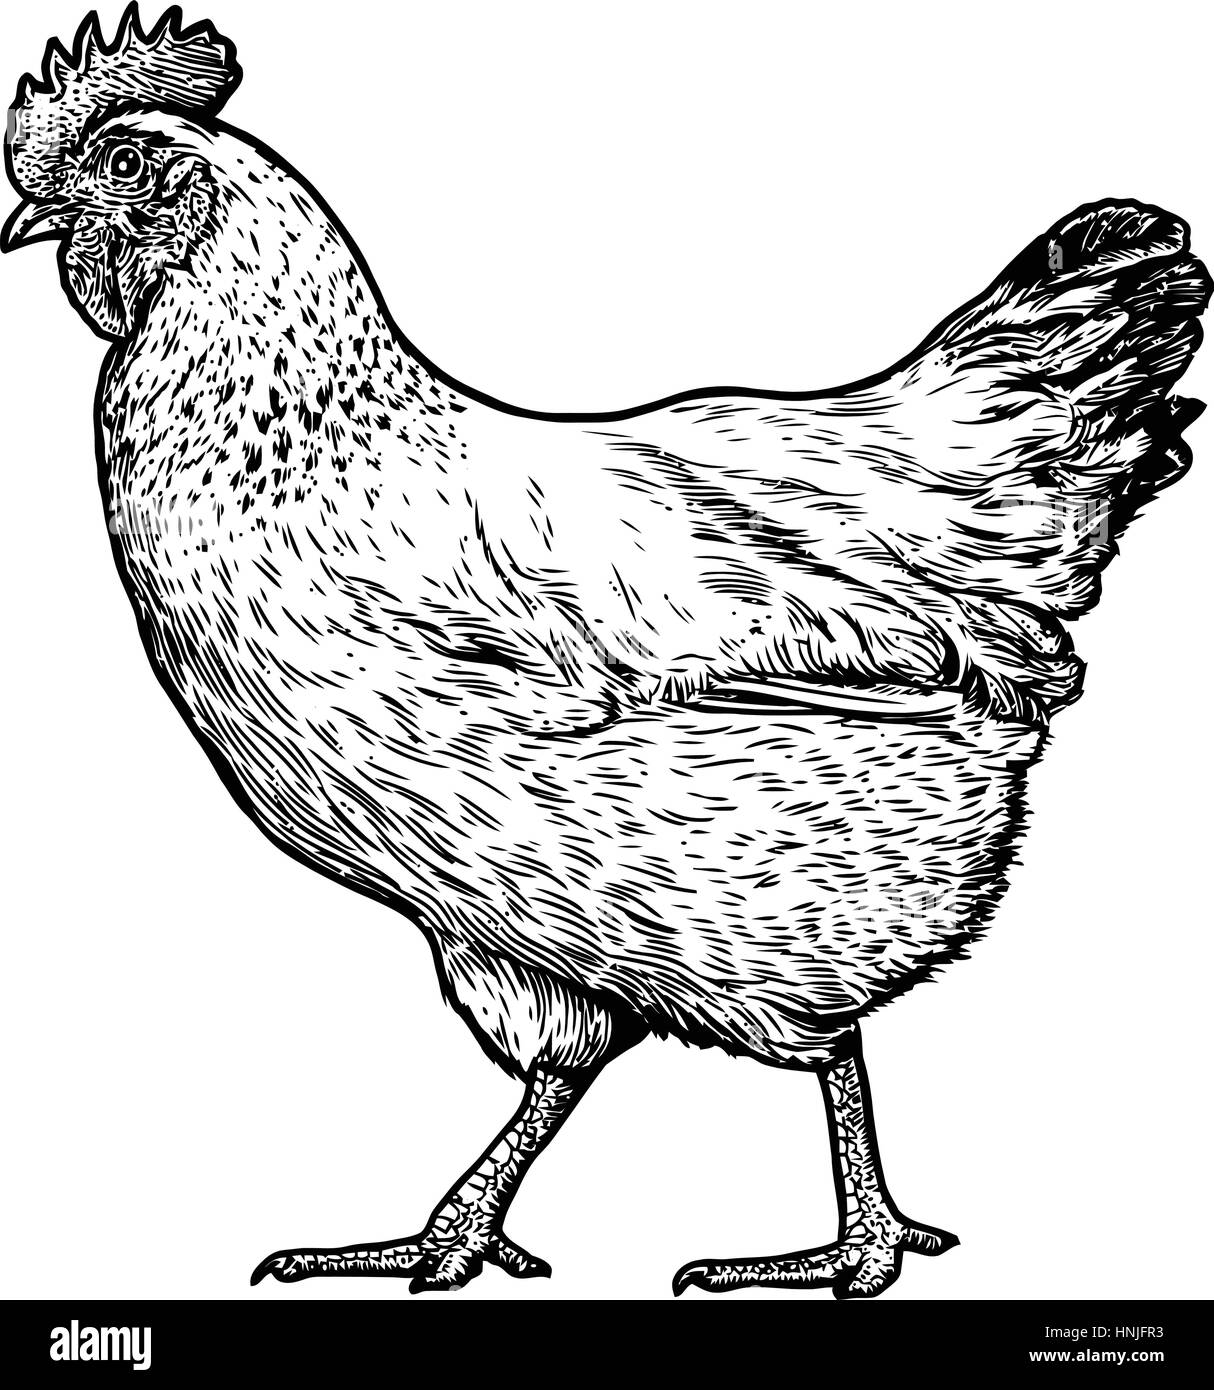 Illustrazione di pollo, disegno, incisione, line art, realistici Illustrazione Vettoriale